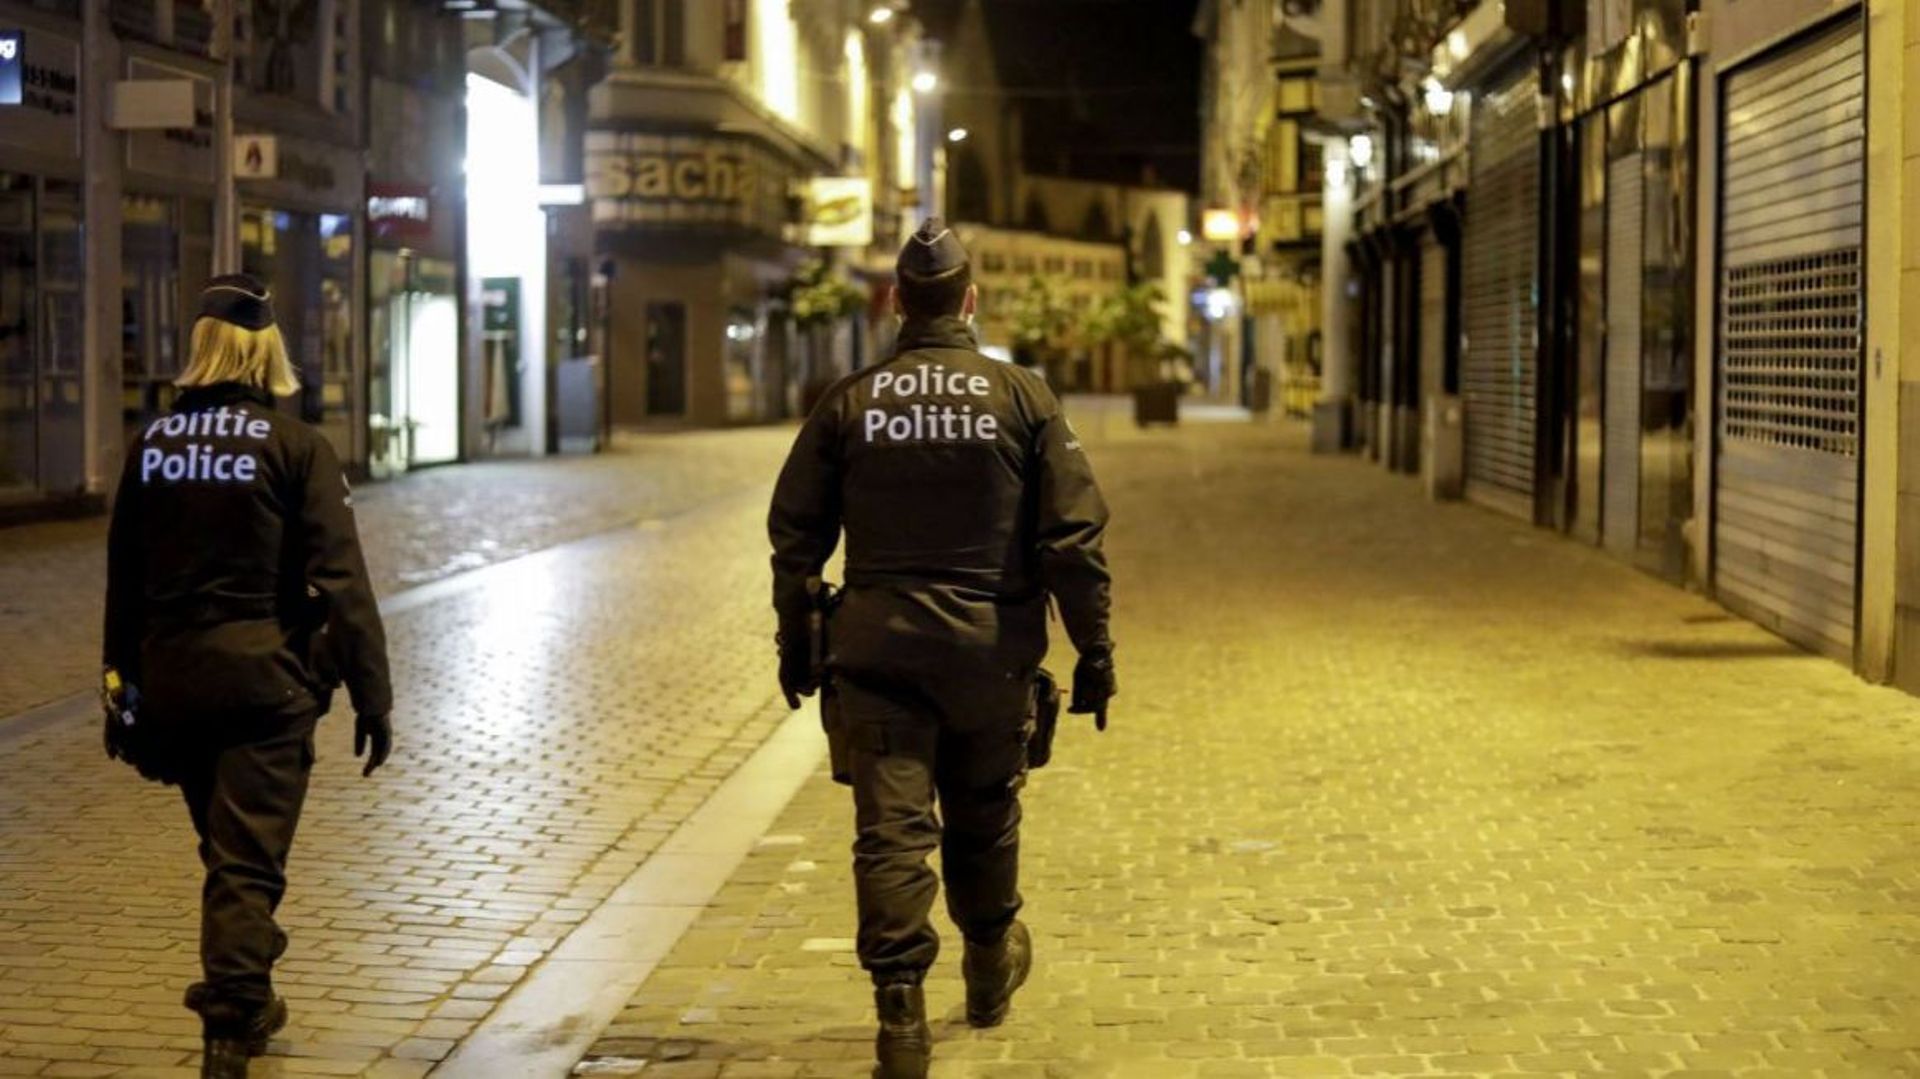 A Bruxelles, le couvre-feu à 22h00 est prolongé jusqu'au 25 avril (illustration).